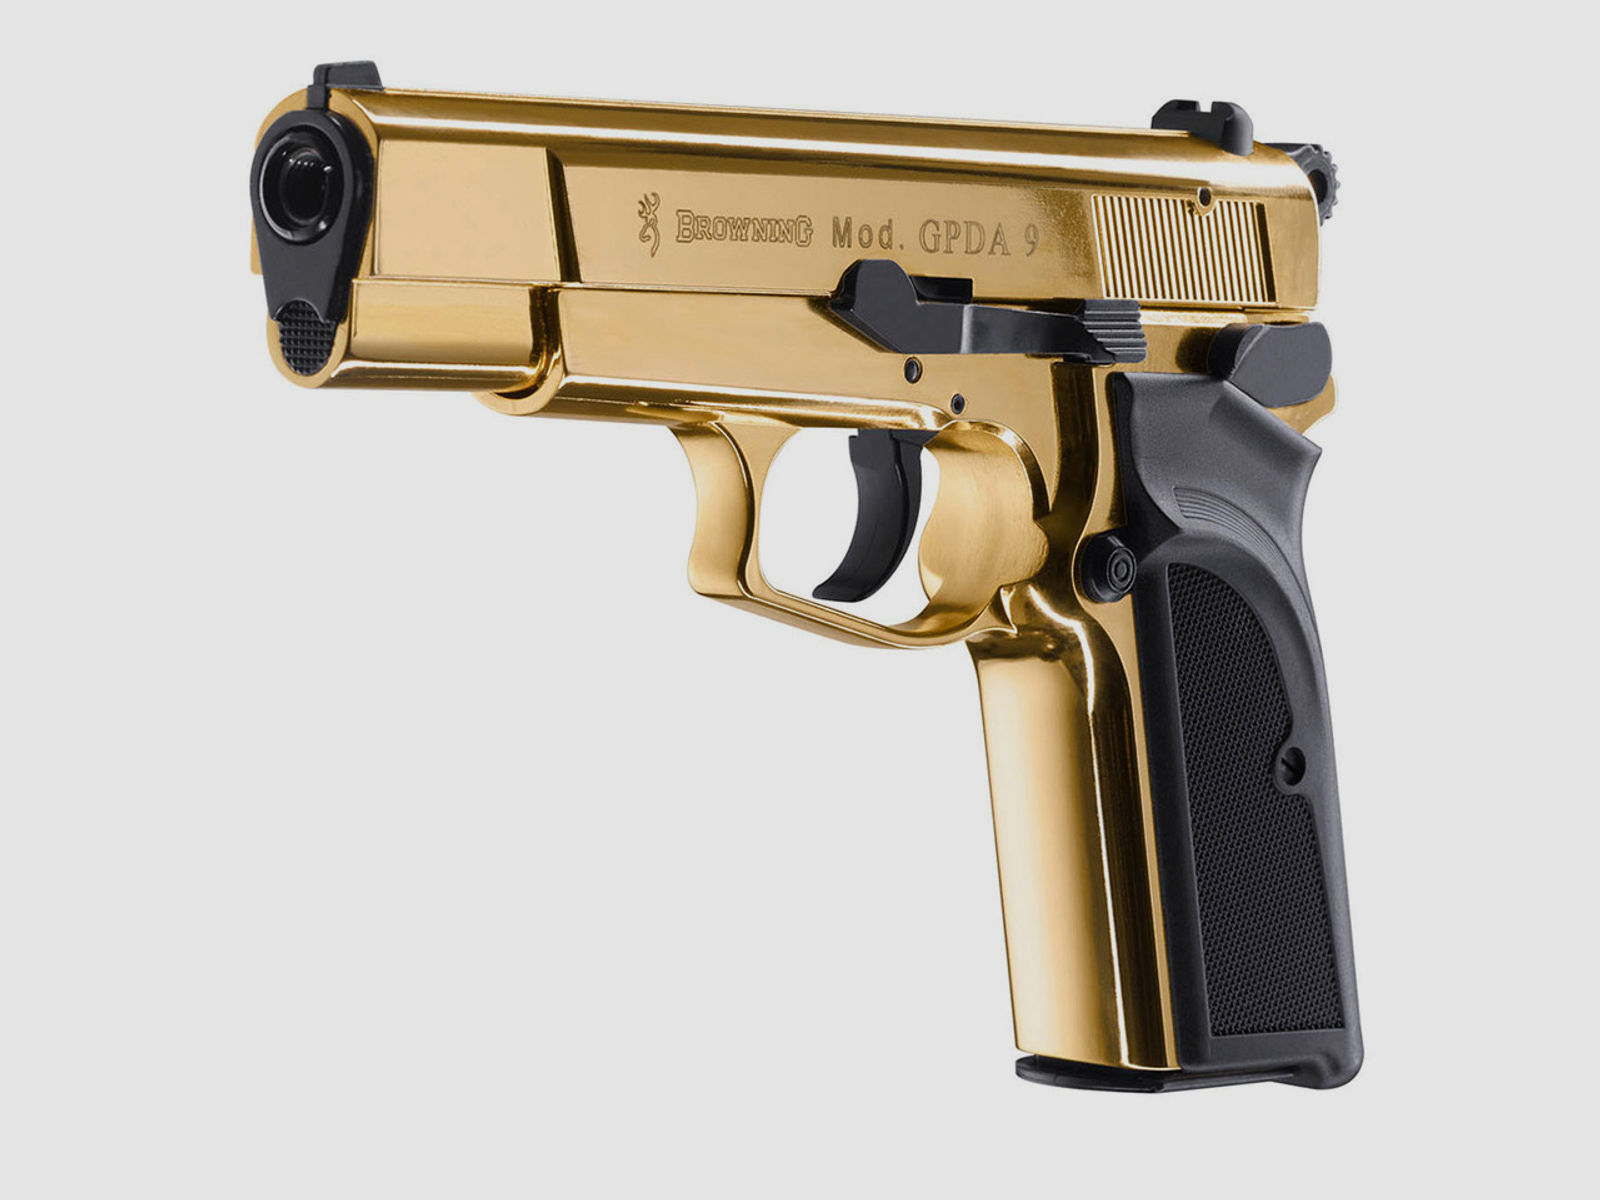 Schreckschuss Pistole Browning GPDA 9 24 Karat vergoldet Kaliber 9 mm P.A.K. (P18) + Universalholster